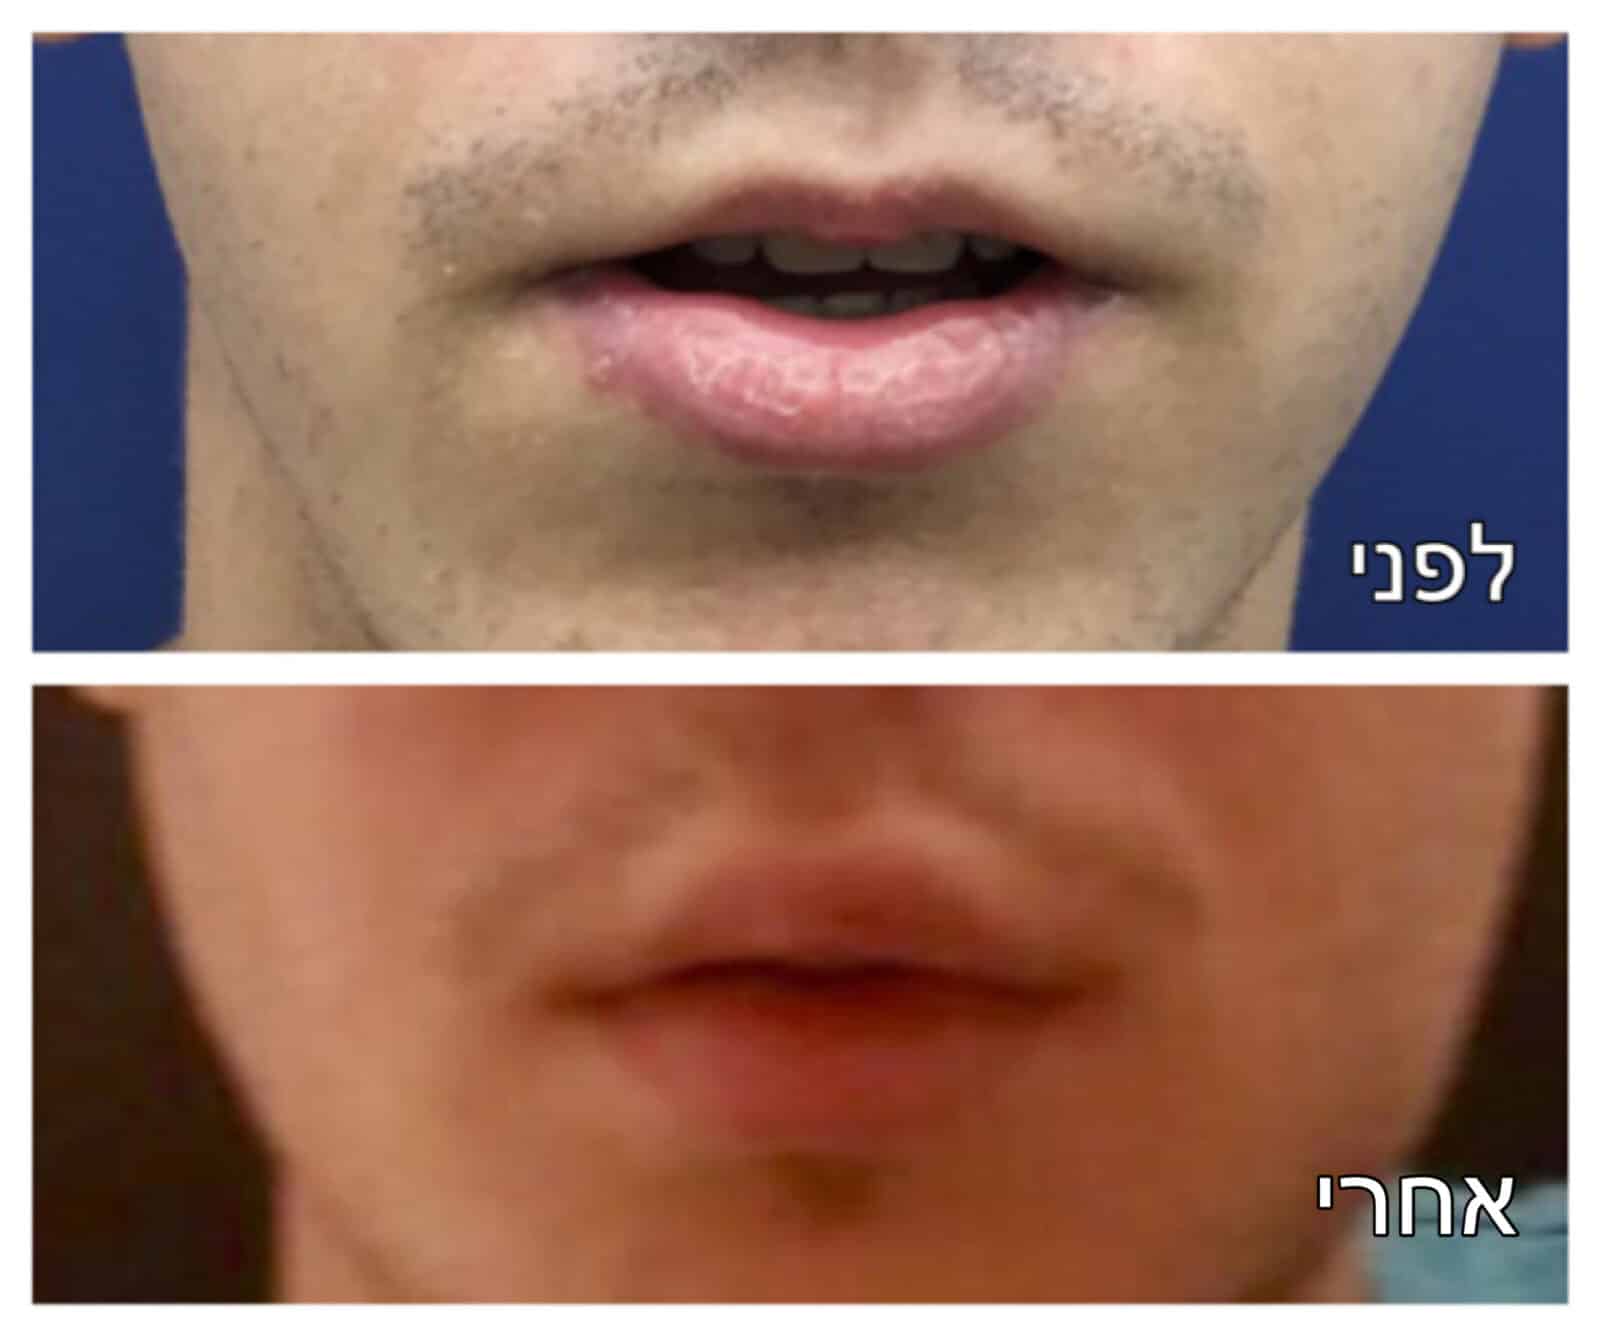 עיבוי שפתיים לפני ואחרי